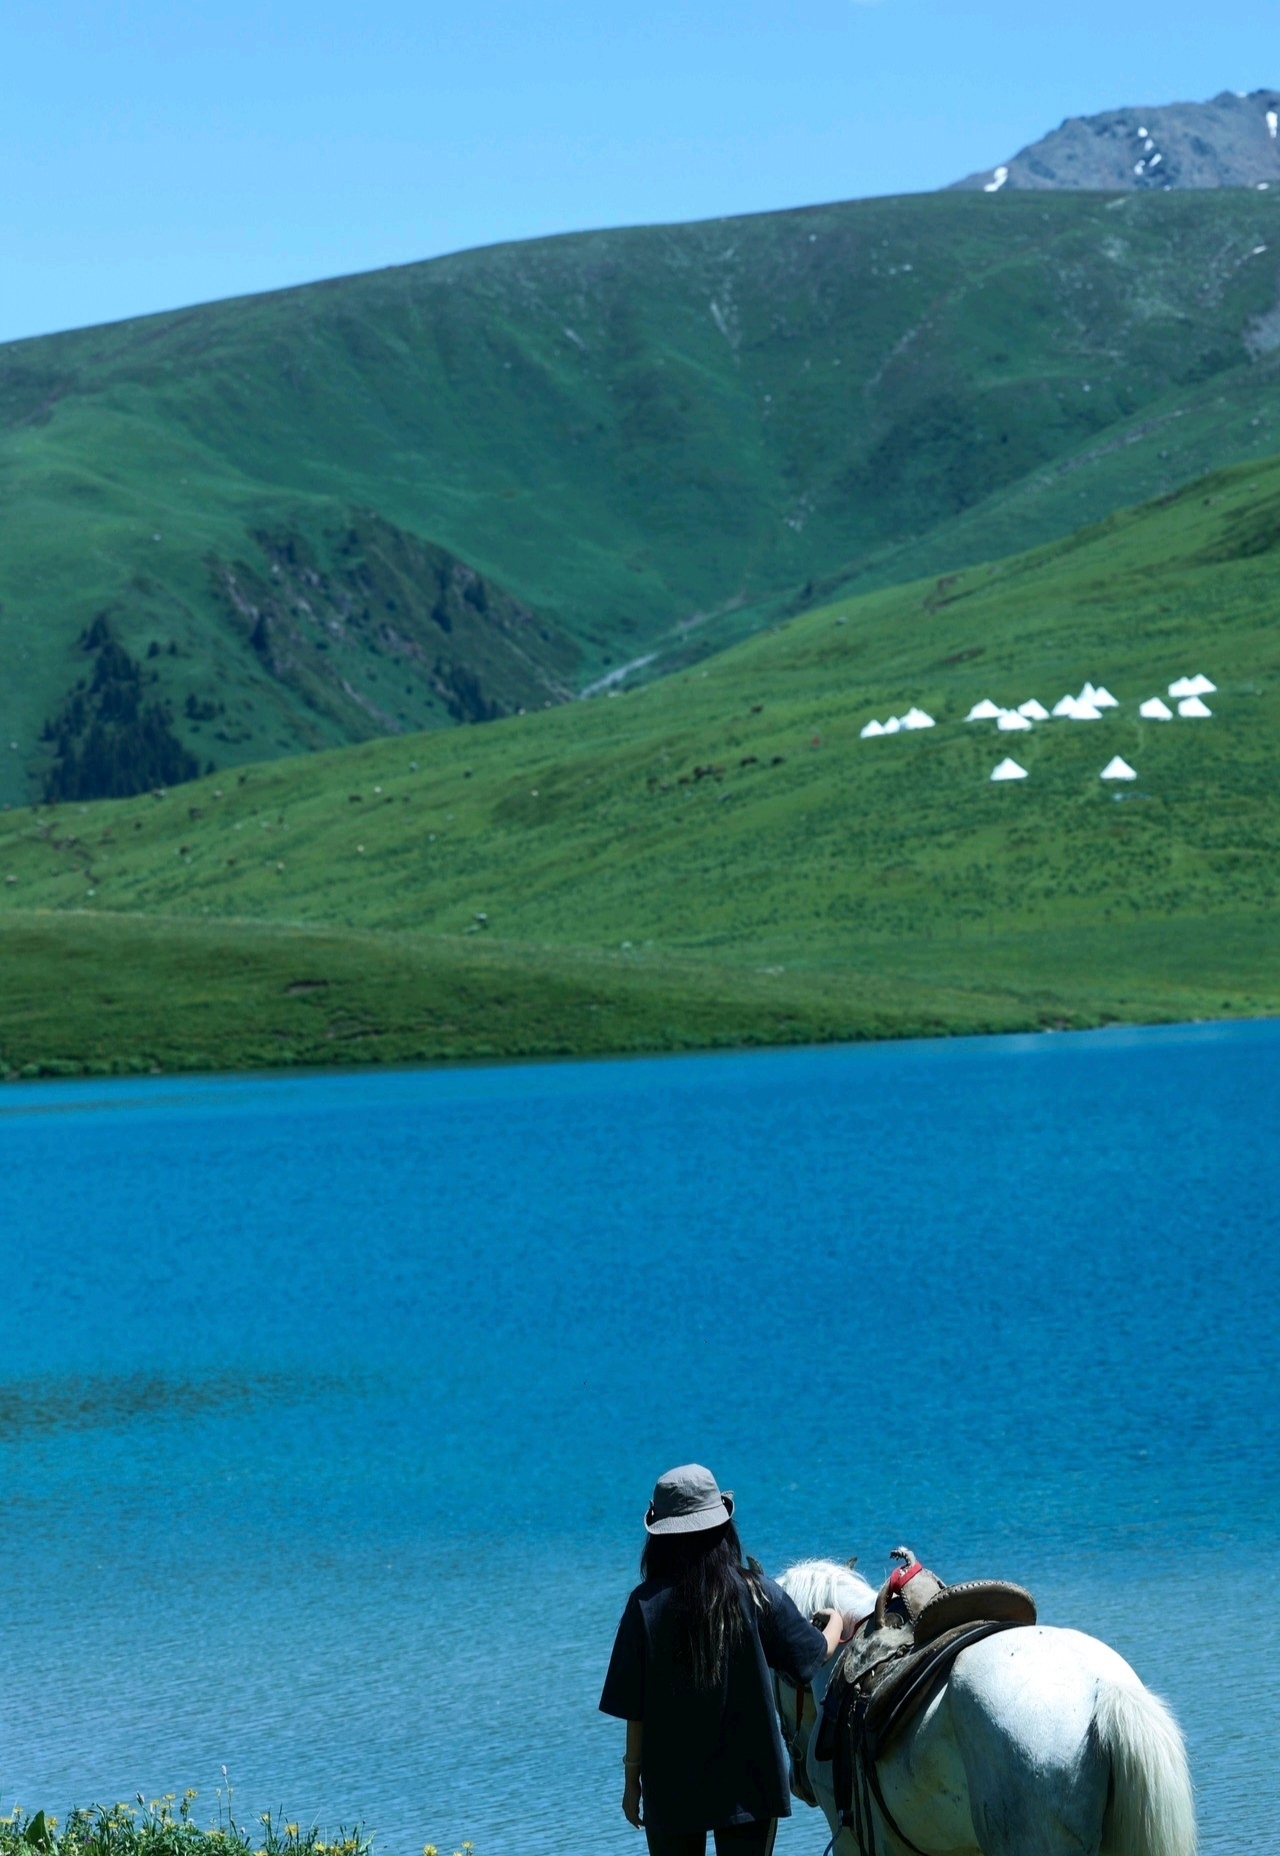 伊犁仙女湖是位于中国新疆维吾尔自治区伊犁哈萨克自治州的一座美丽的高山湖泊。它坐落在天山山脉的怀特山脚